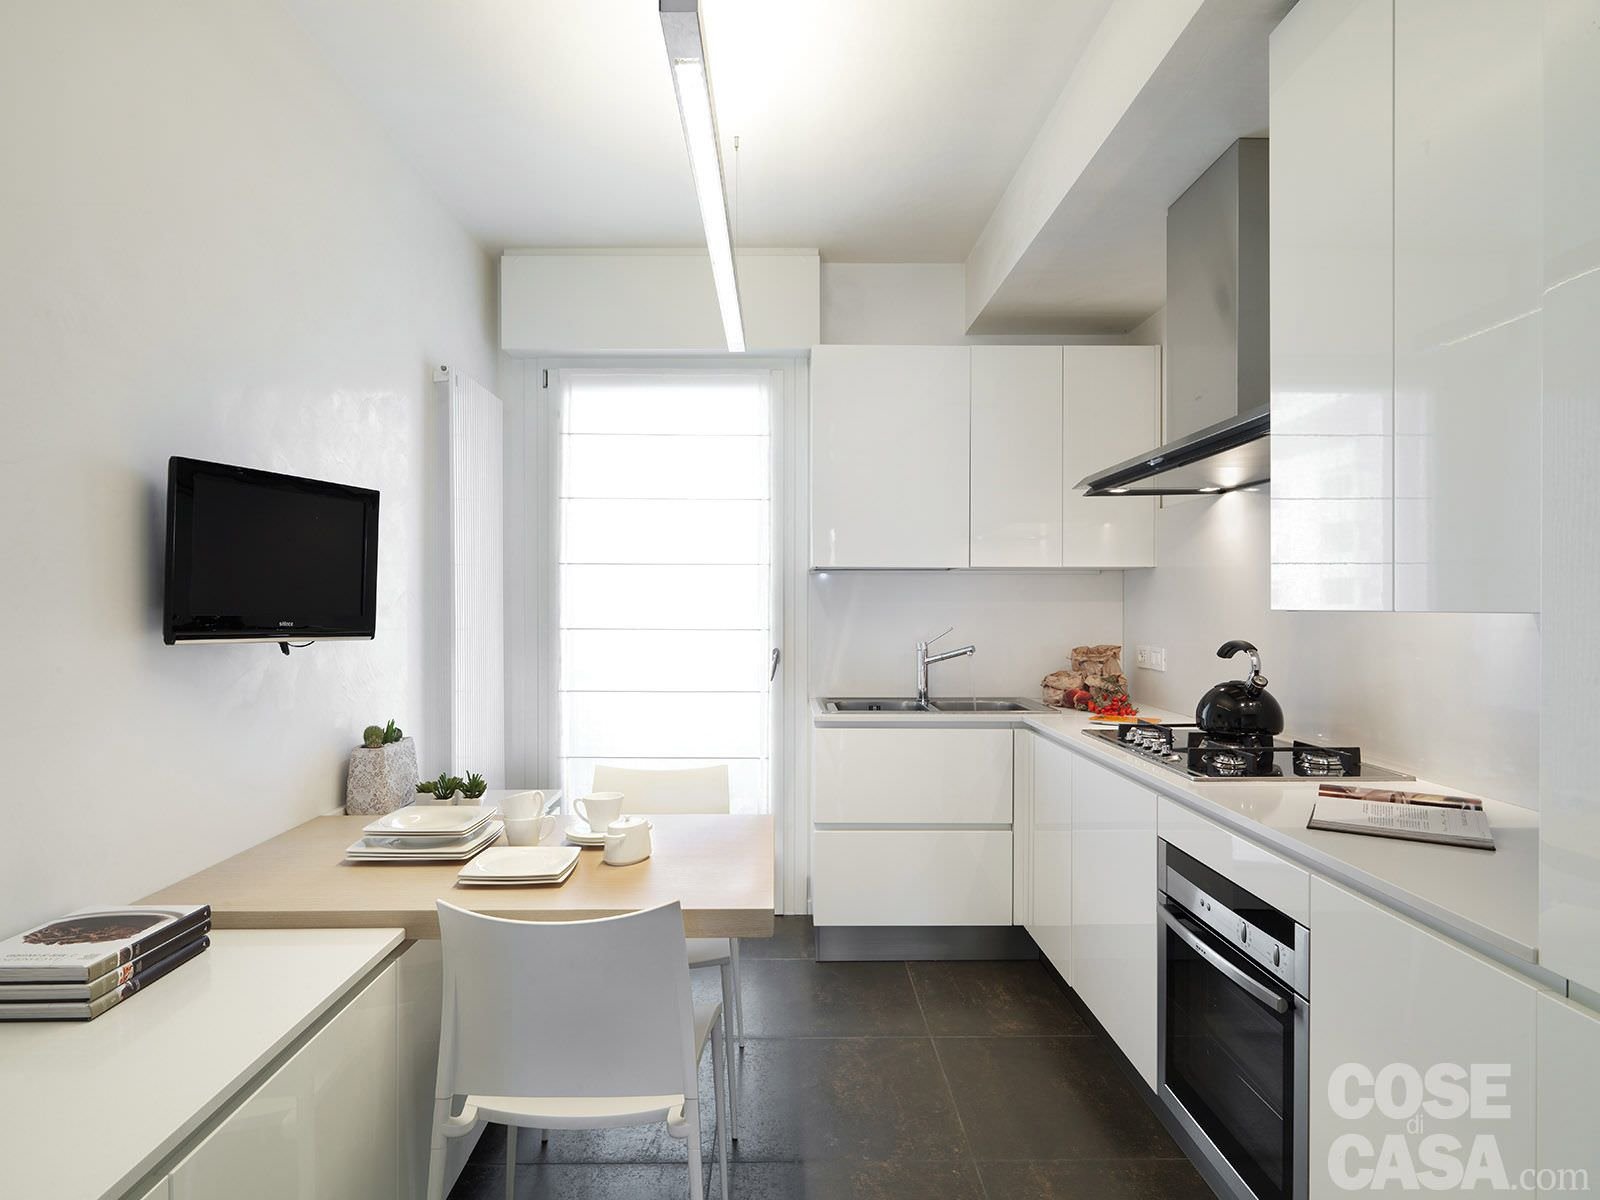 Piccola cucina moderna con i mobili in laccato bianco per aumentare lo spazio visivo. Pavimenti in gres porcellanato. 